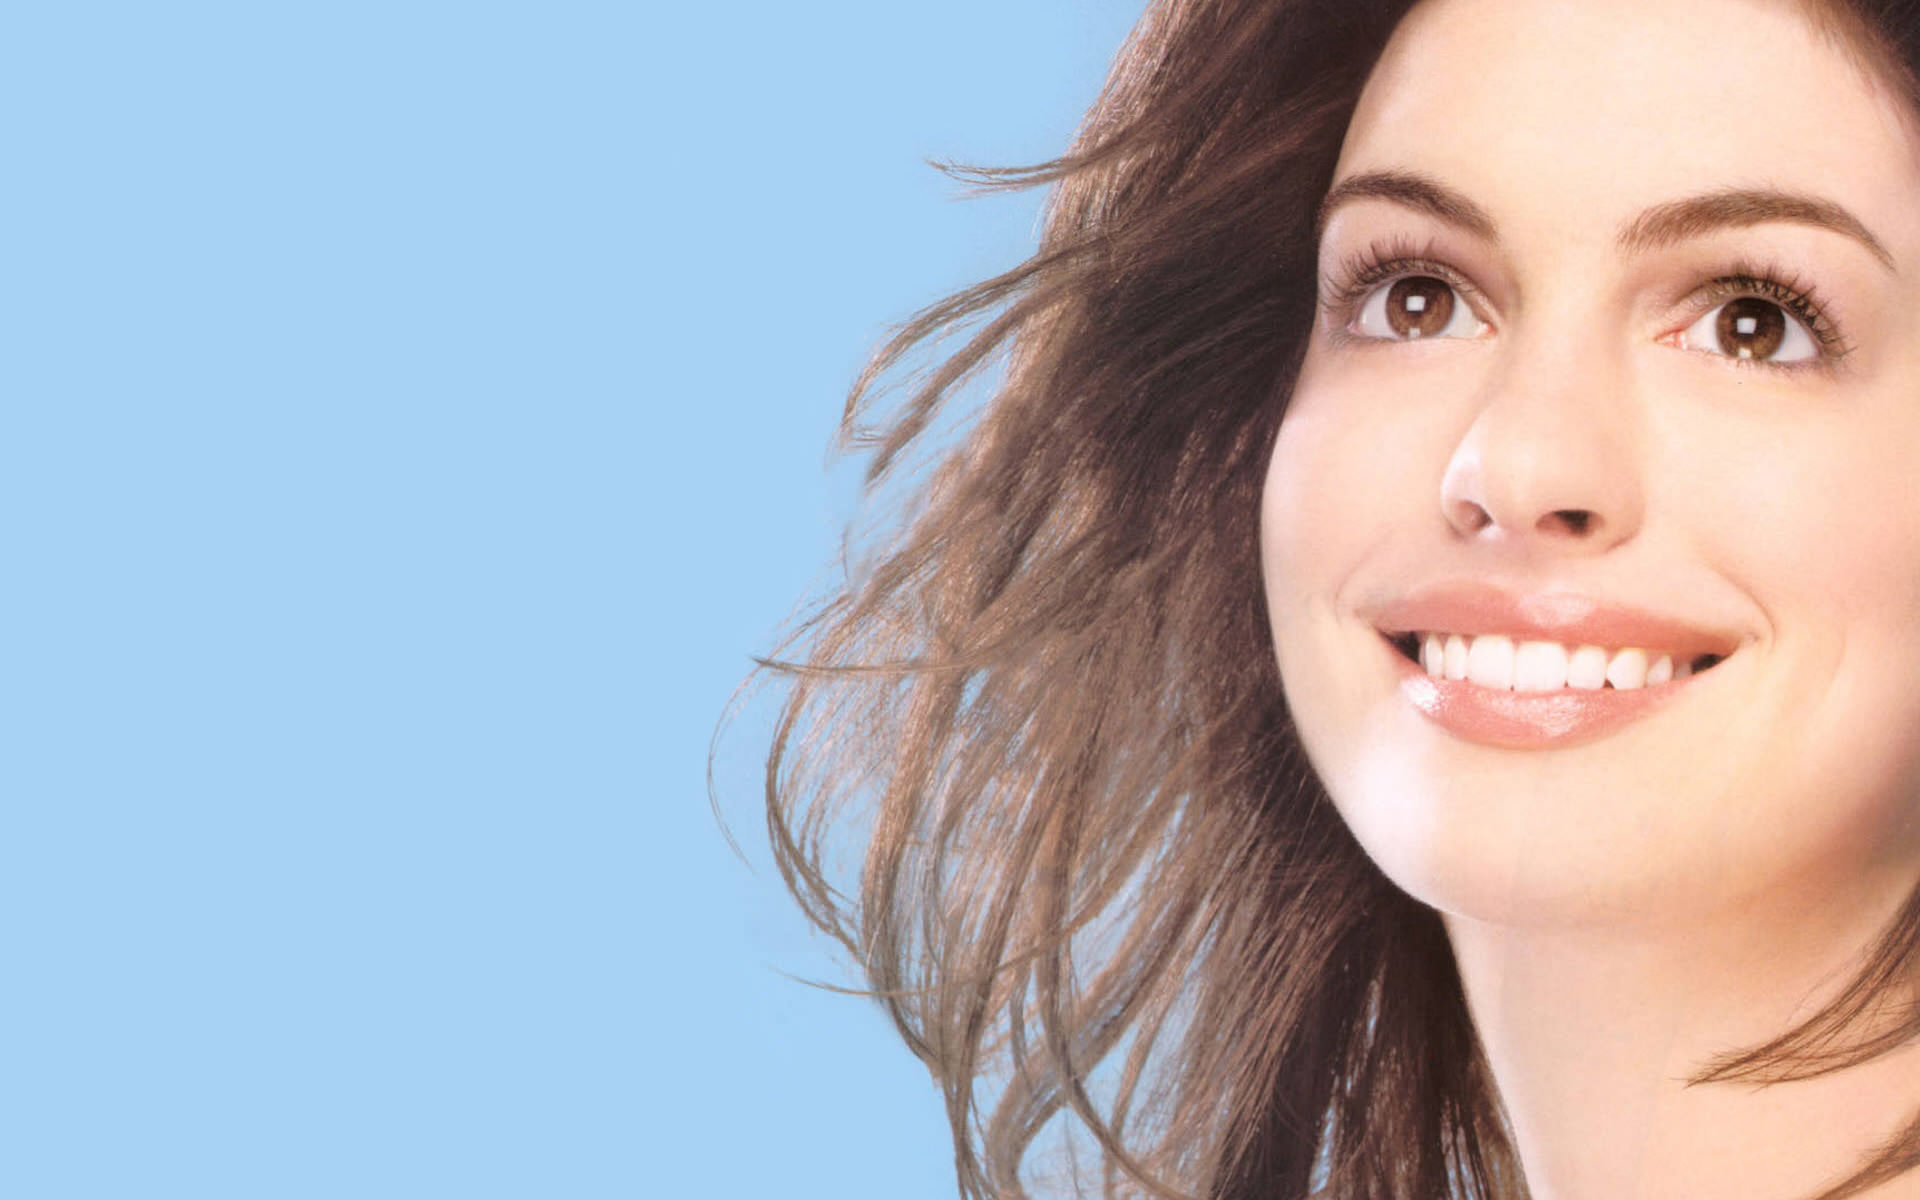 Anne Hathaway Wallpaper Resolution High Celebrity